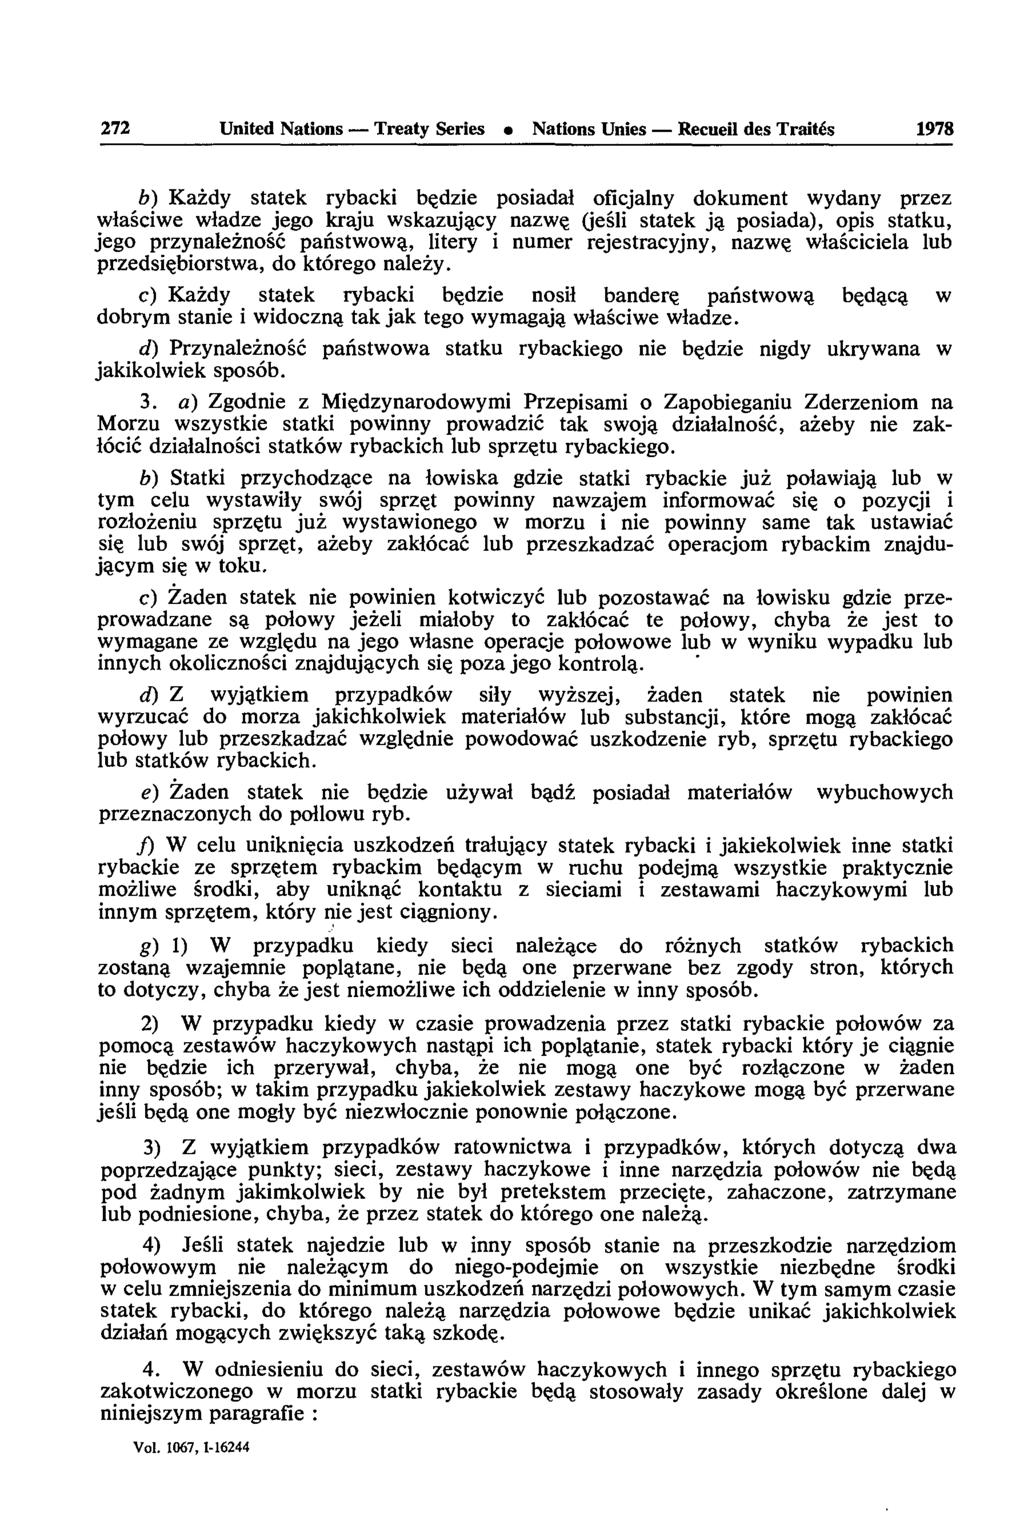 272 United Nations Treaty Series Nations Unies Recueil des Traités 1978 b) Kazdy statek rybacki bçdzie posiadal oficjalny dokument wydany przez wlasciwe wladze jego kraju wskazujacy nazwe, (jesli